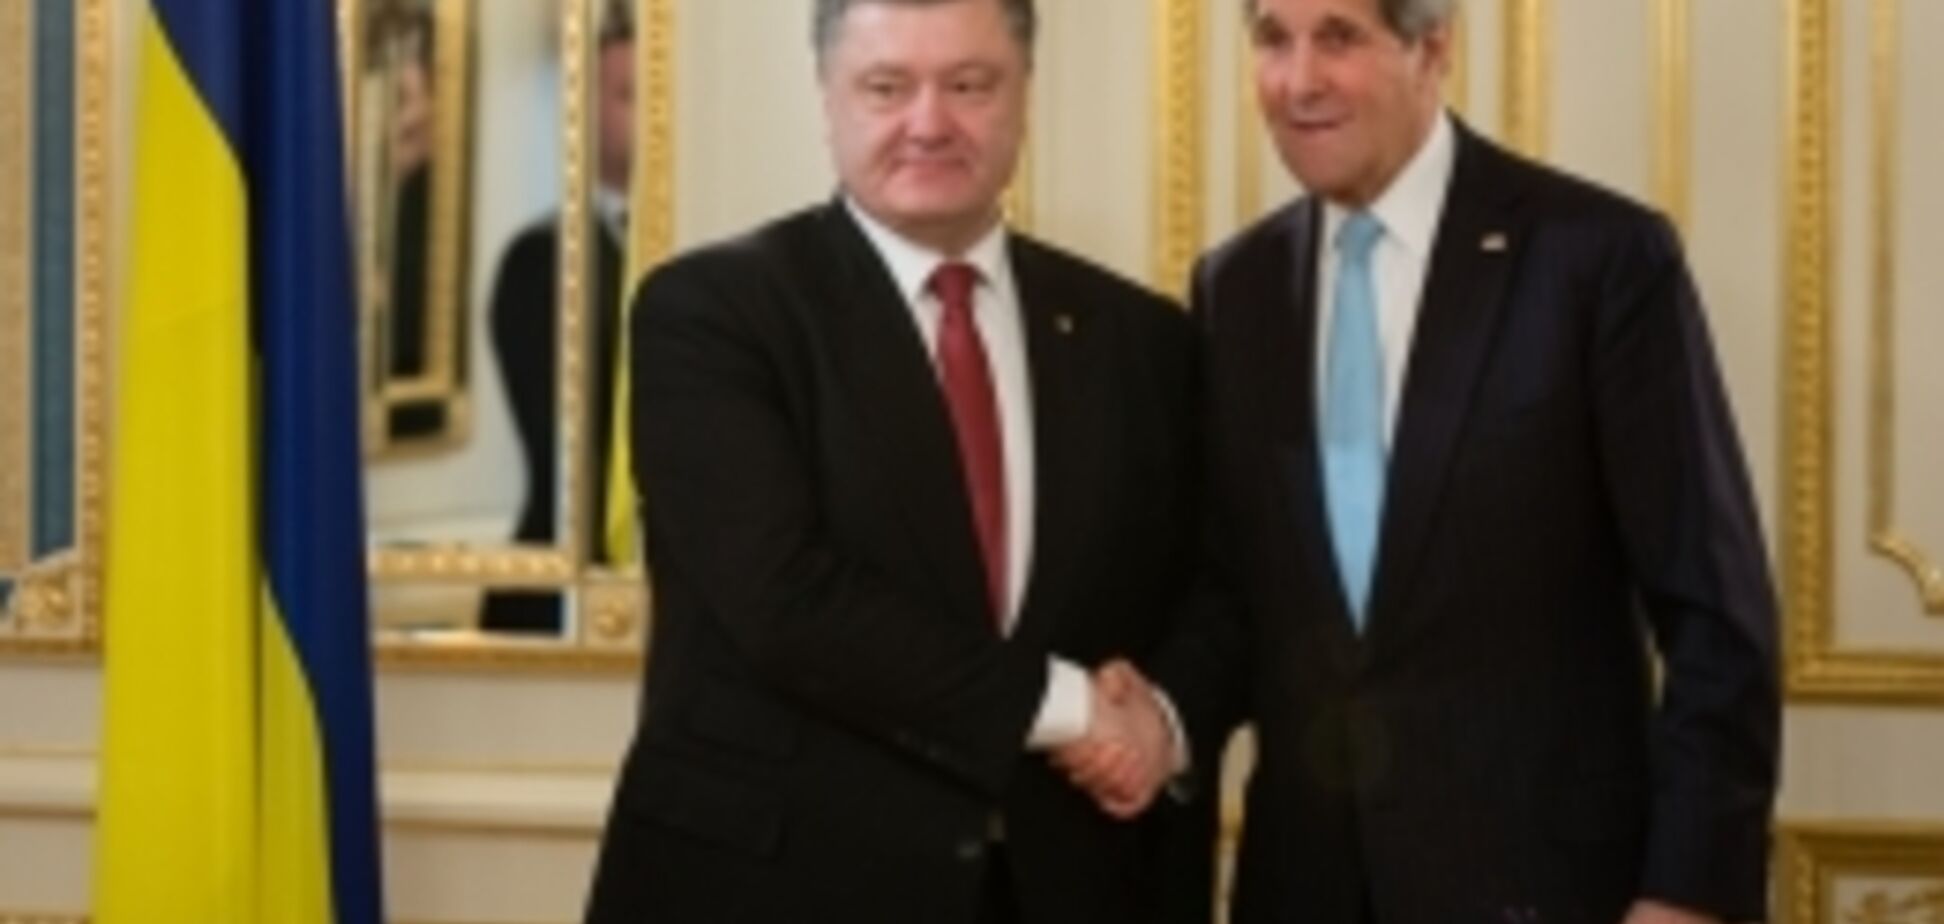 Порошенко: для нас важна поддержка США реформ в Украине